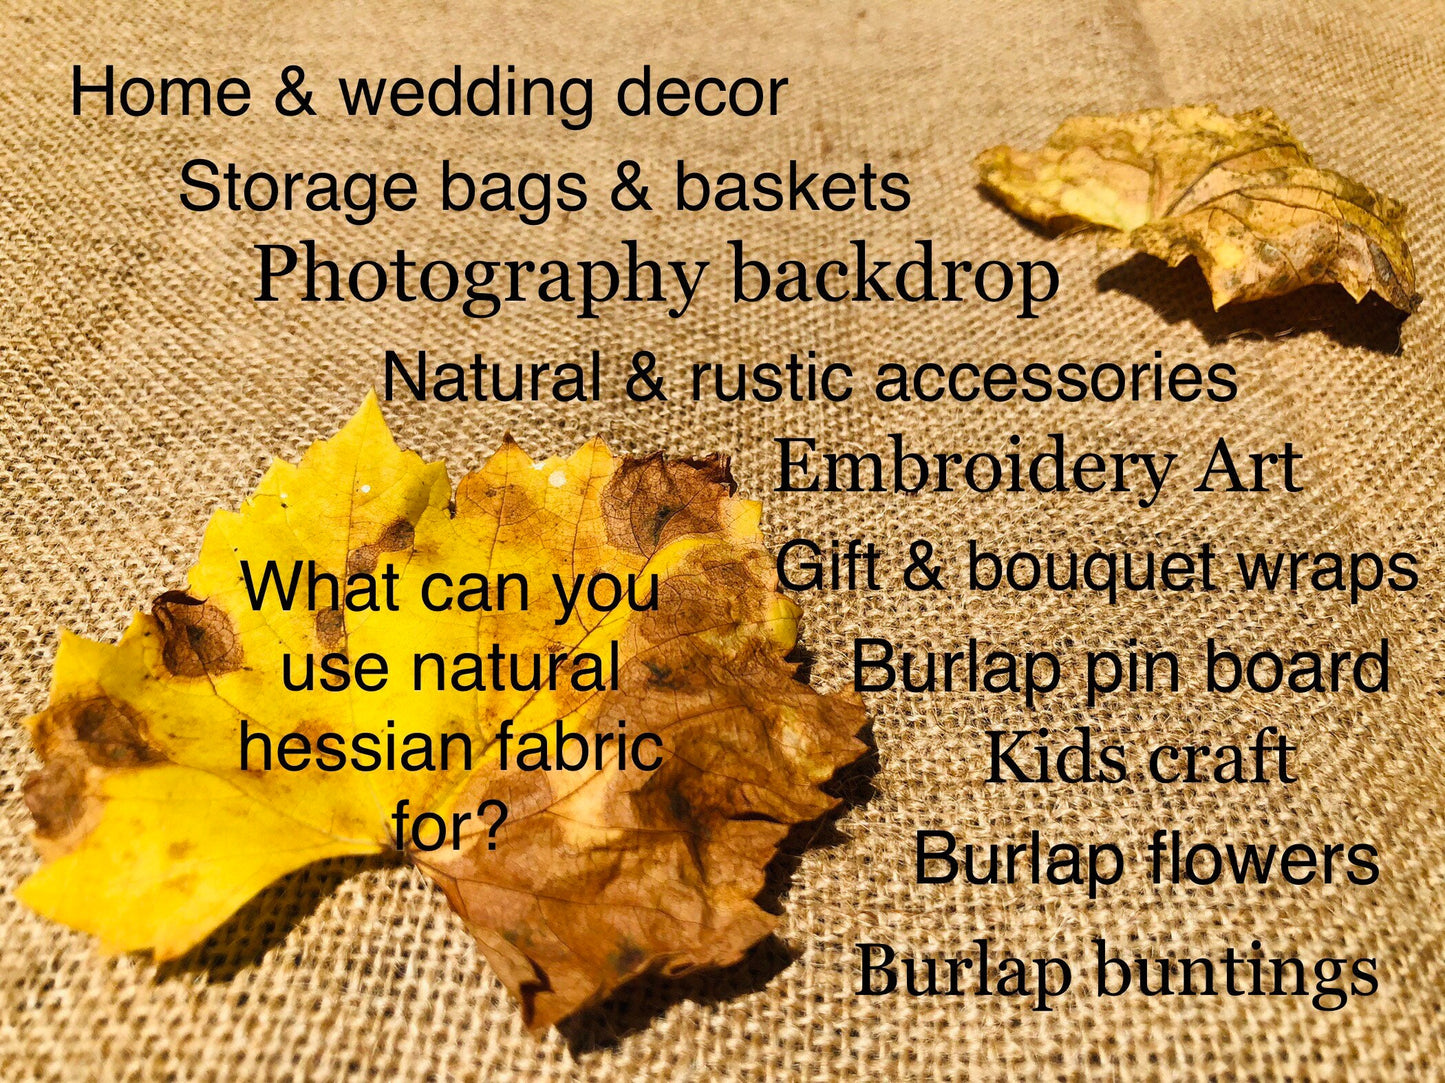 Natural burlap fabric, 100% jute hessian, rustic home decor, burlap home decor, natural rustic wedding decor, burlap bags, bunting, craft